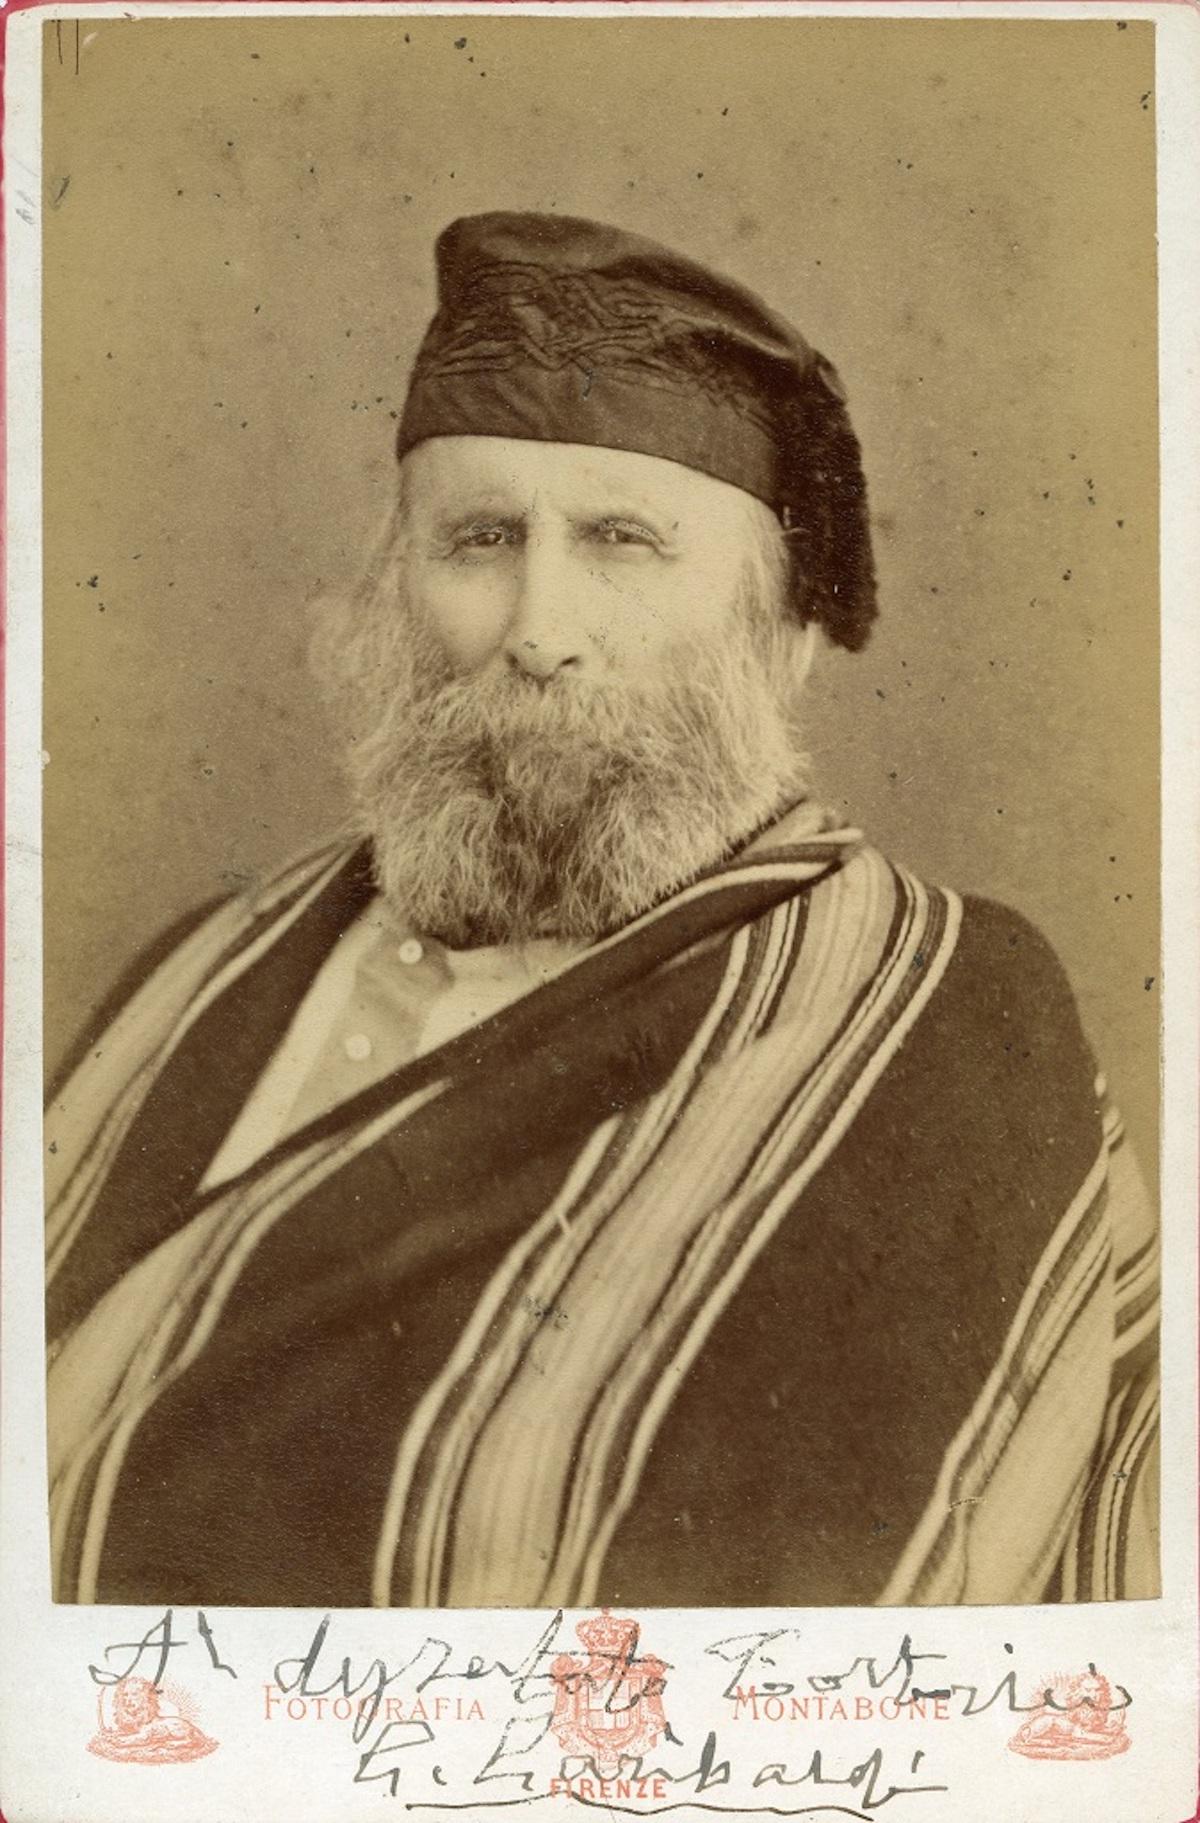 Luigi Montabone Portrait Photograph – Handsigniertes Vintage-Fotoporträt von Giuseppe Garibaldi, 1870er Jahre